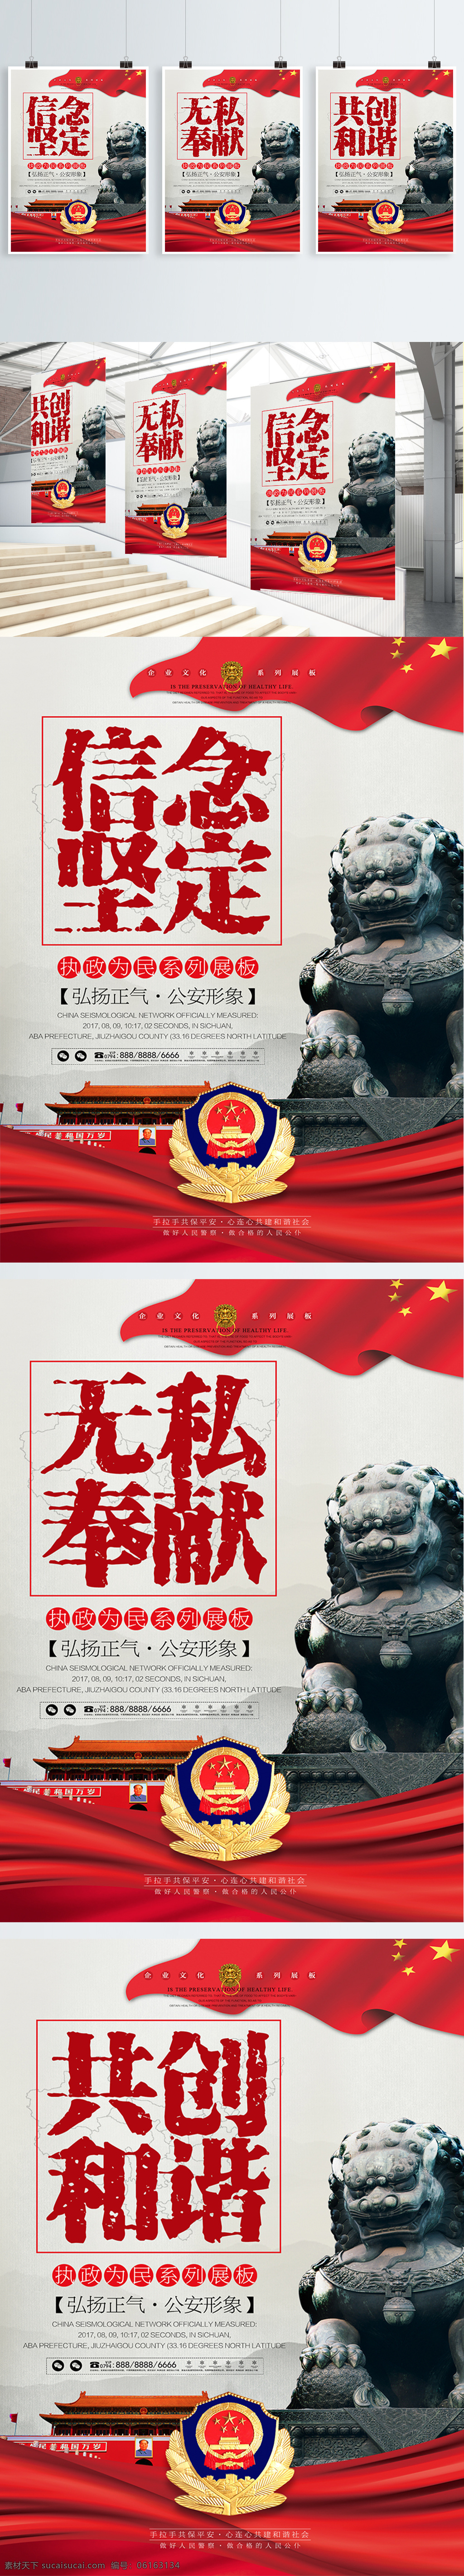 党建 公安 民警 公益 安全 系列 海报 展板 中国风 武警 派出所